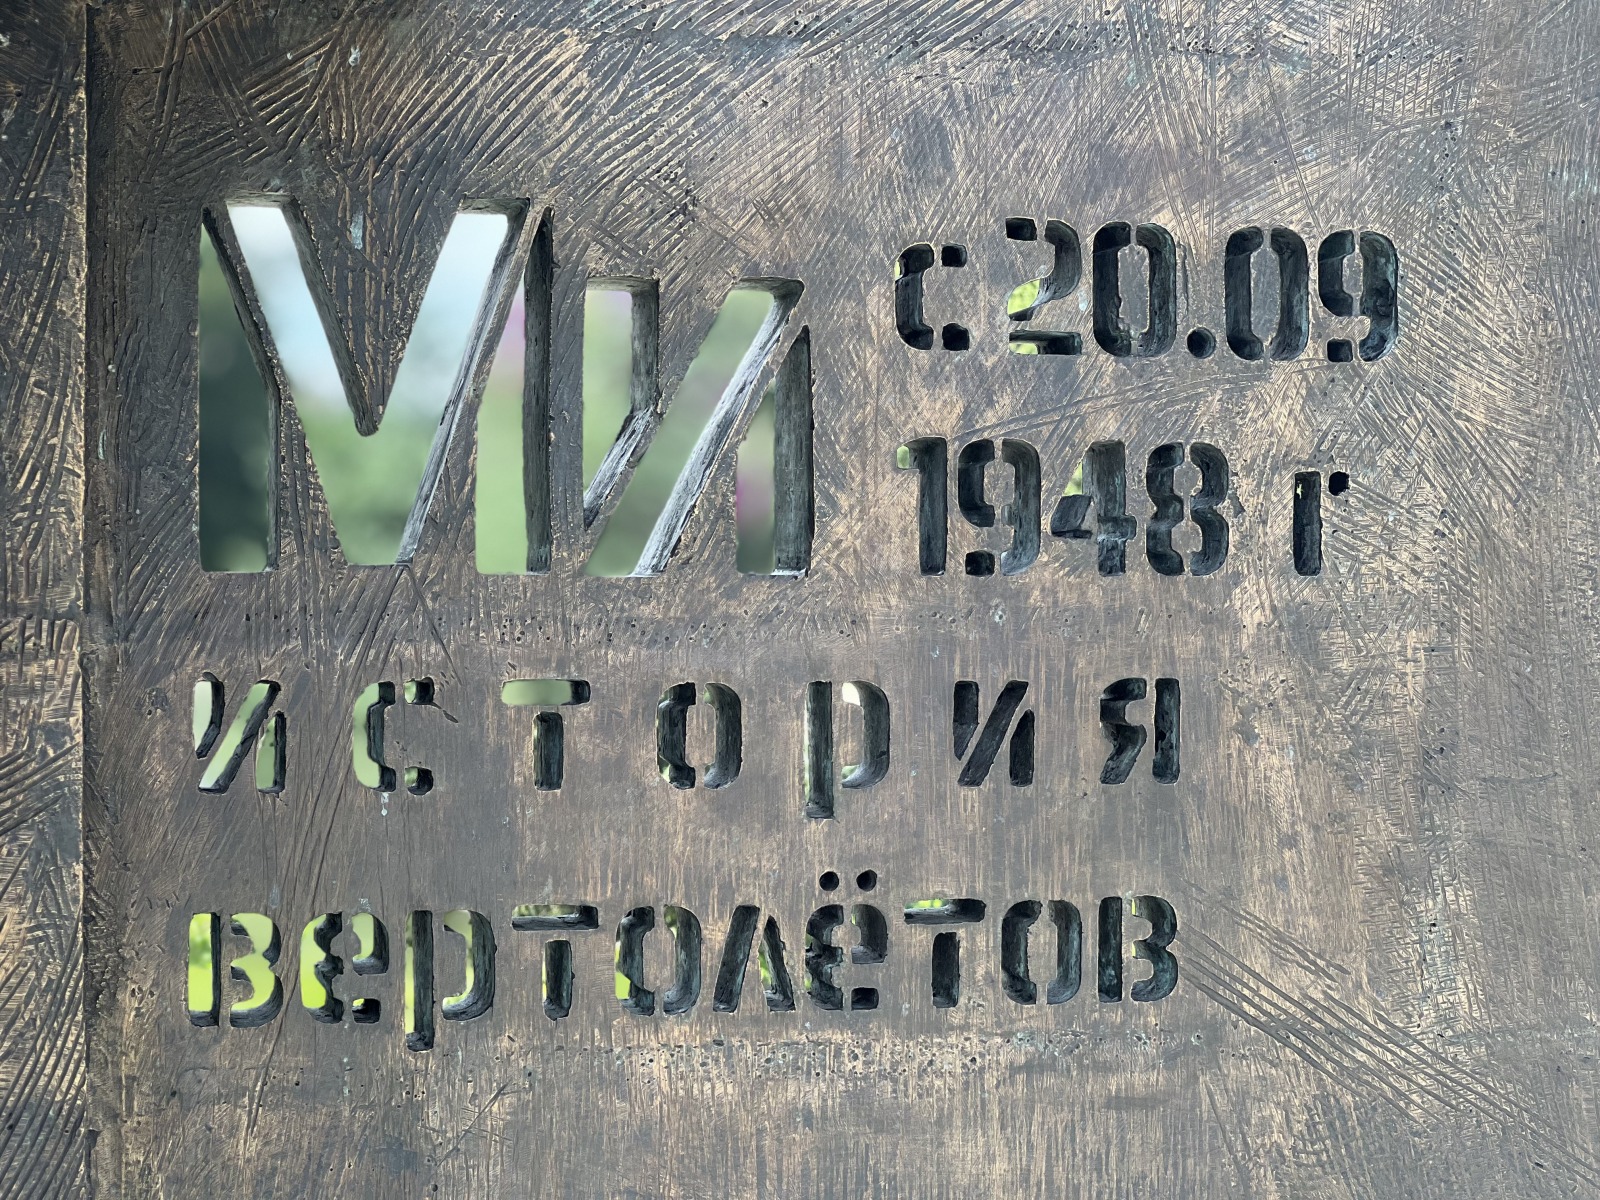 Памятник авиаконструкторам г. Иркутск, 2023 г.